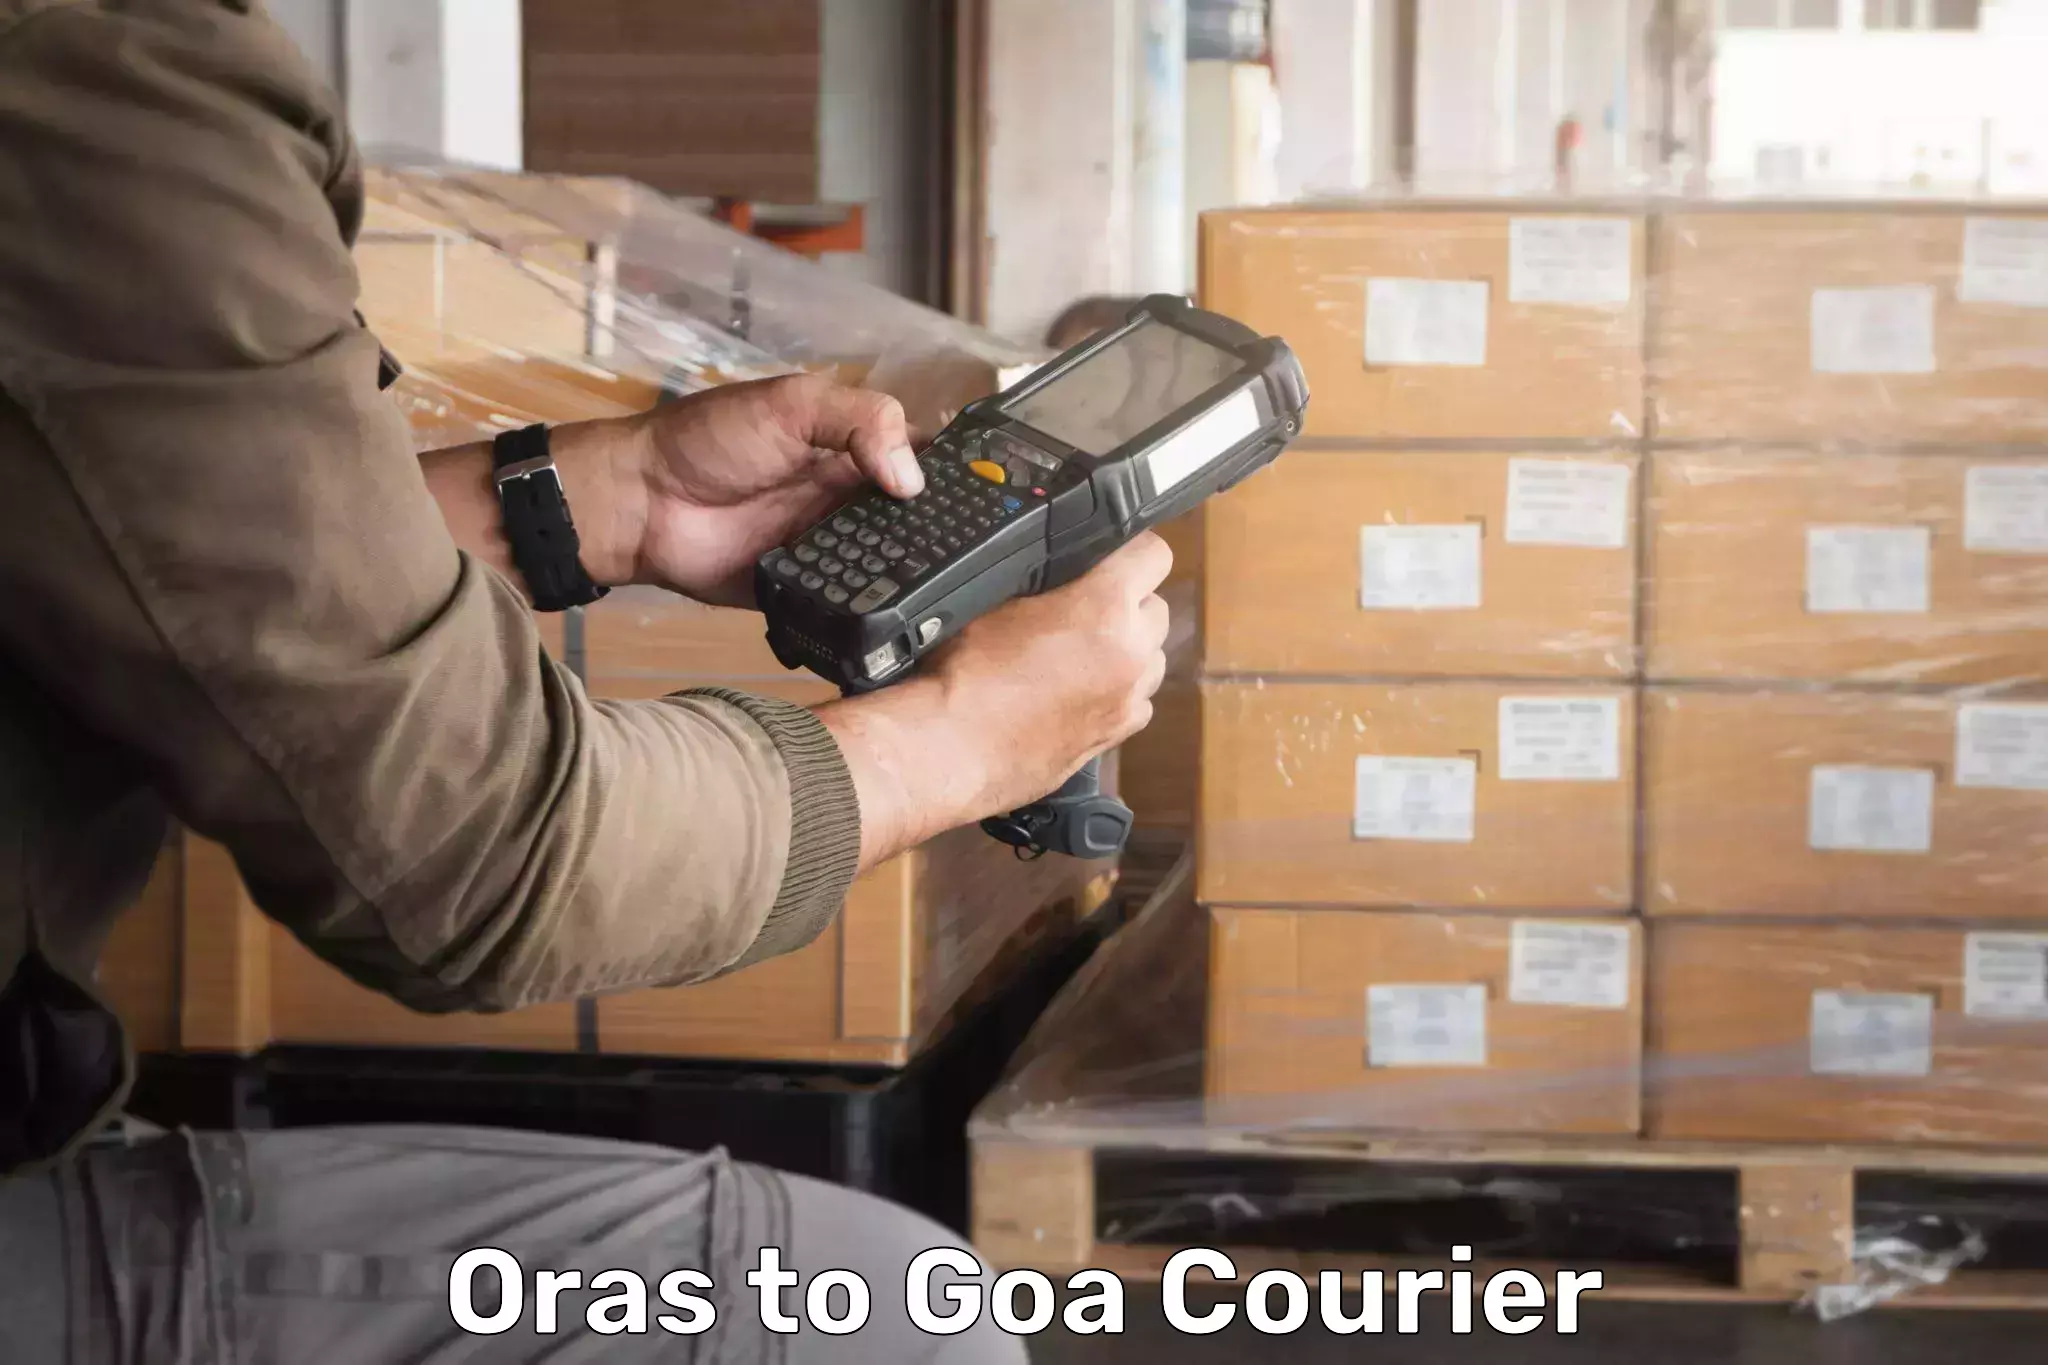 User-friendly courier app Oras to Ponda